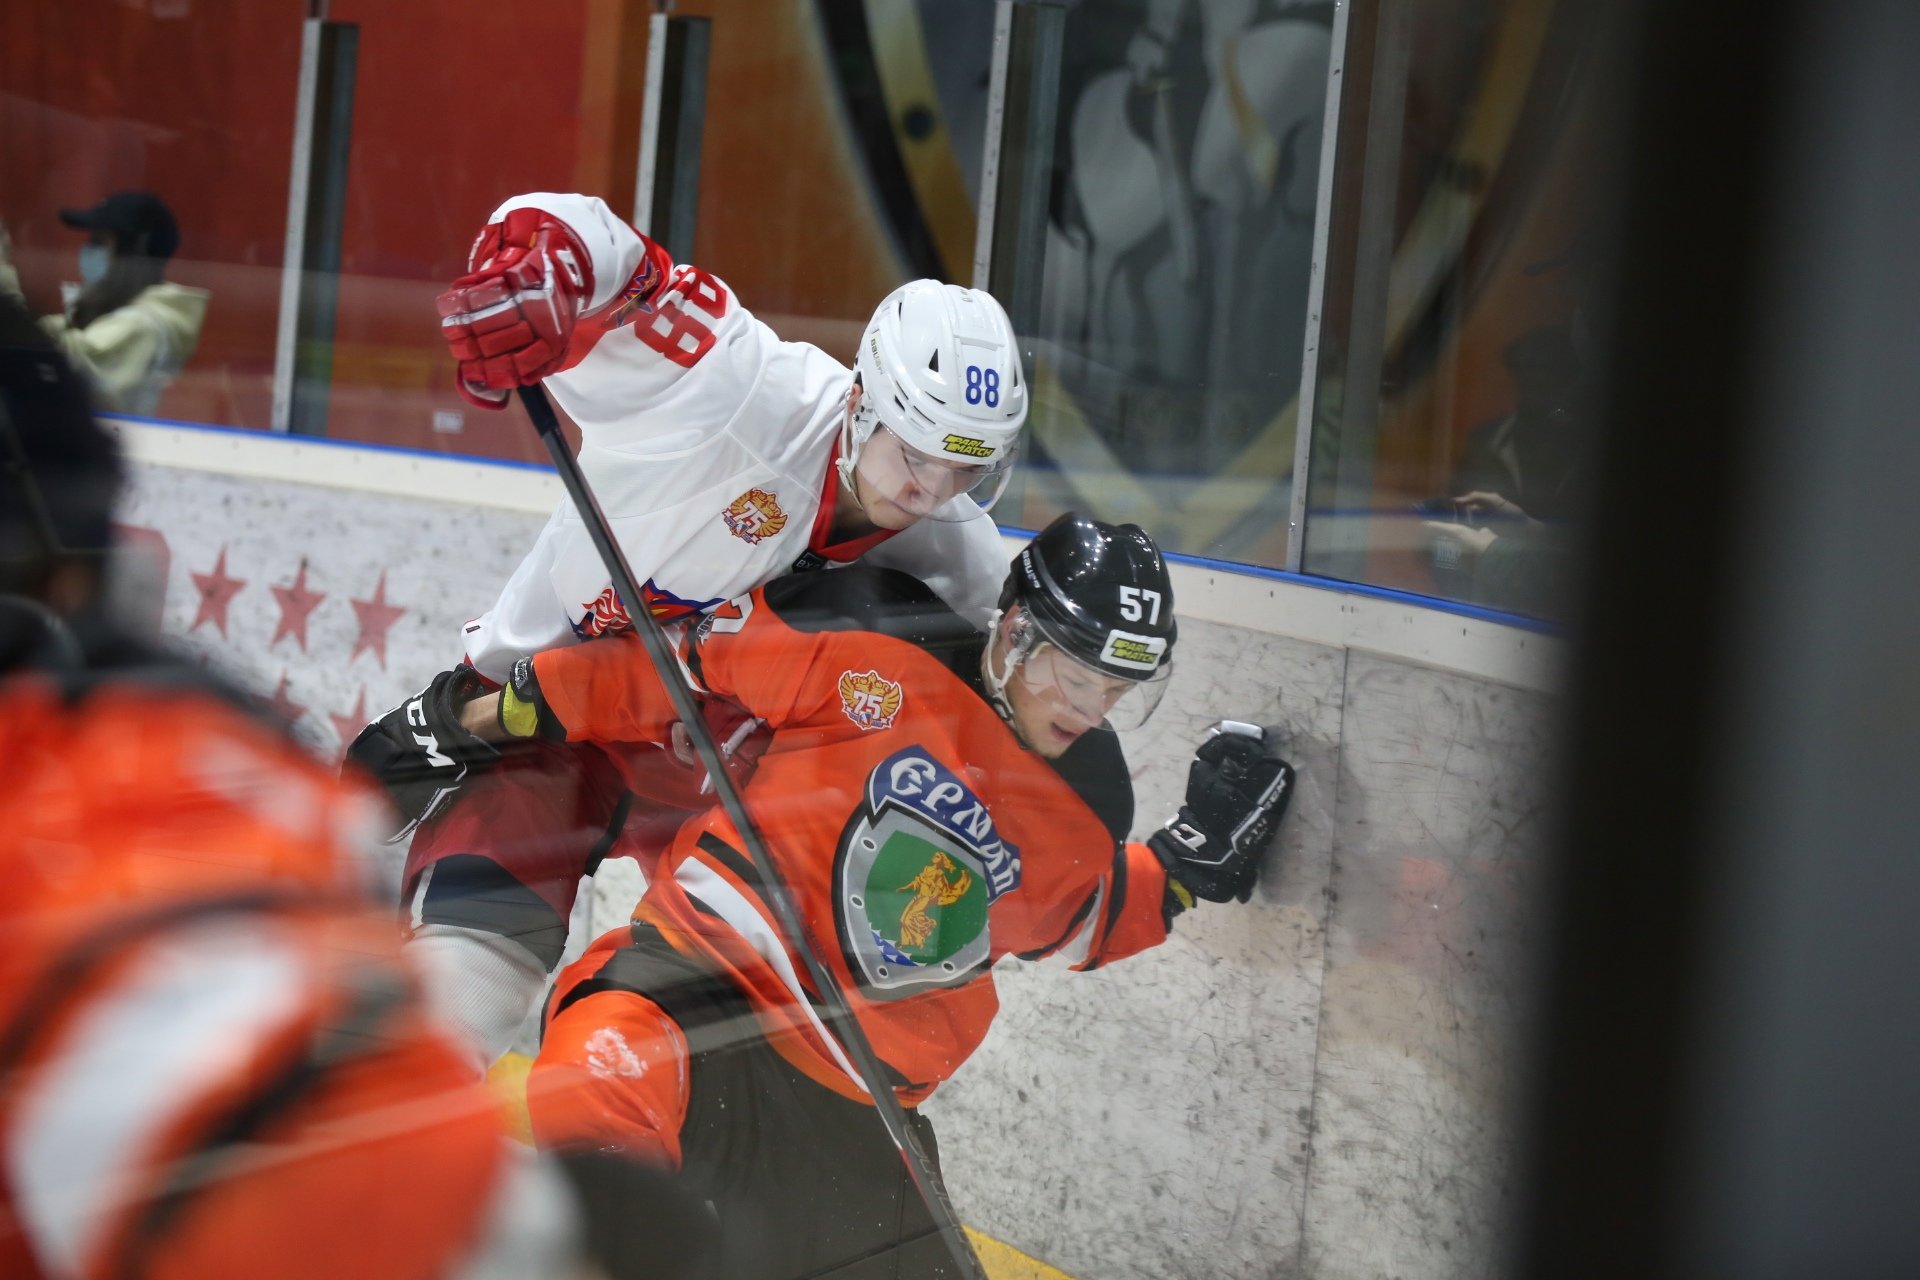 

Хоккеисты «Ижстали» победили на выездном матче команду из Ангарска 

